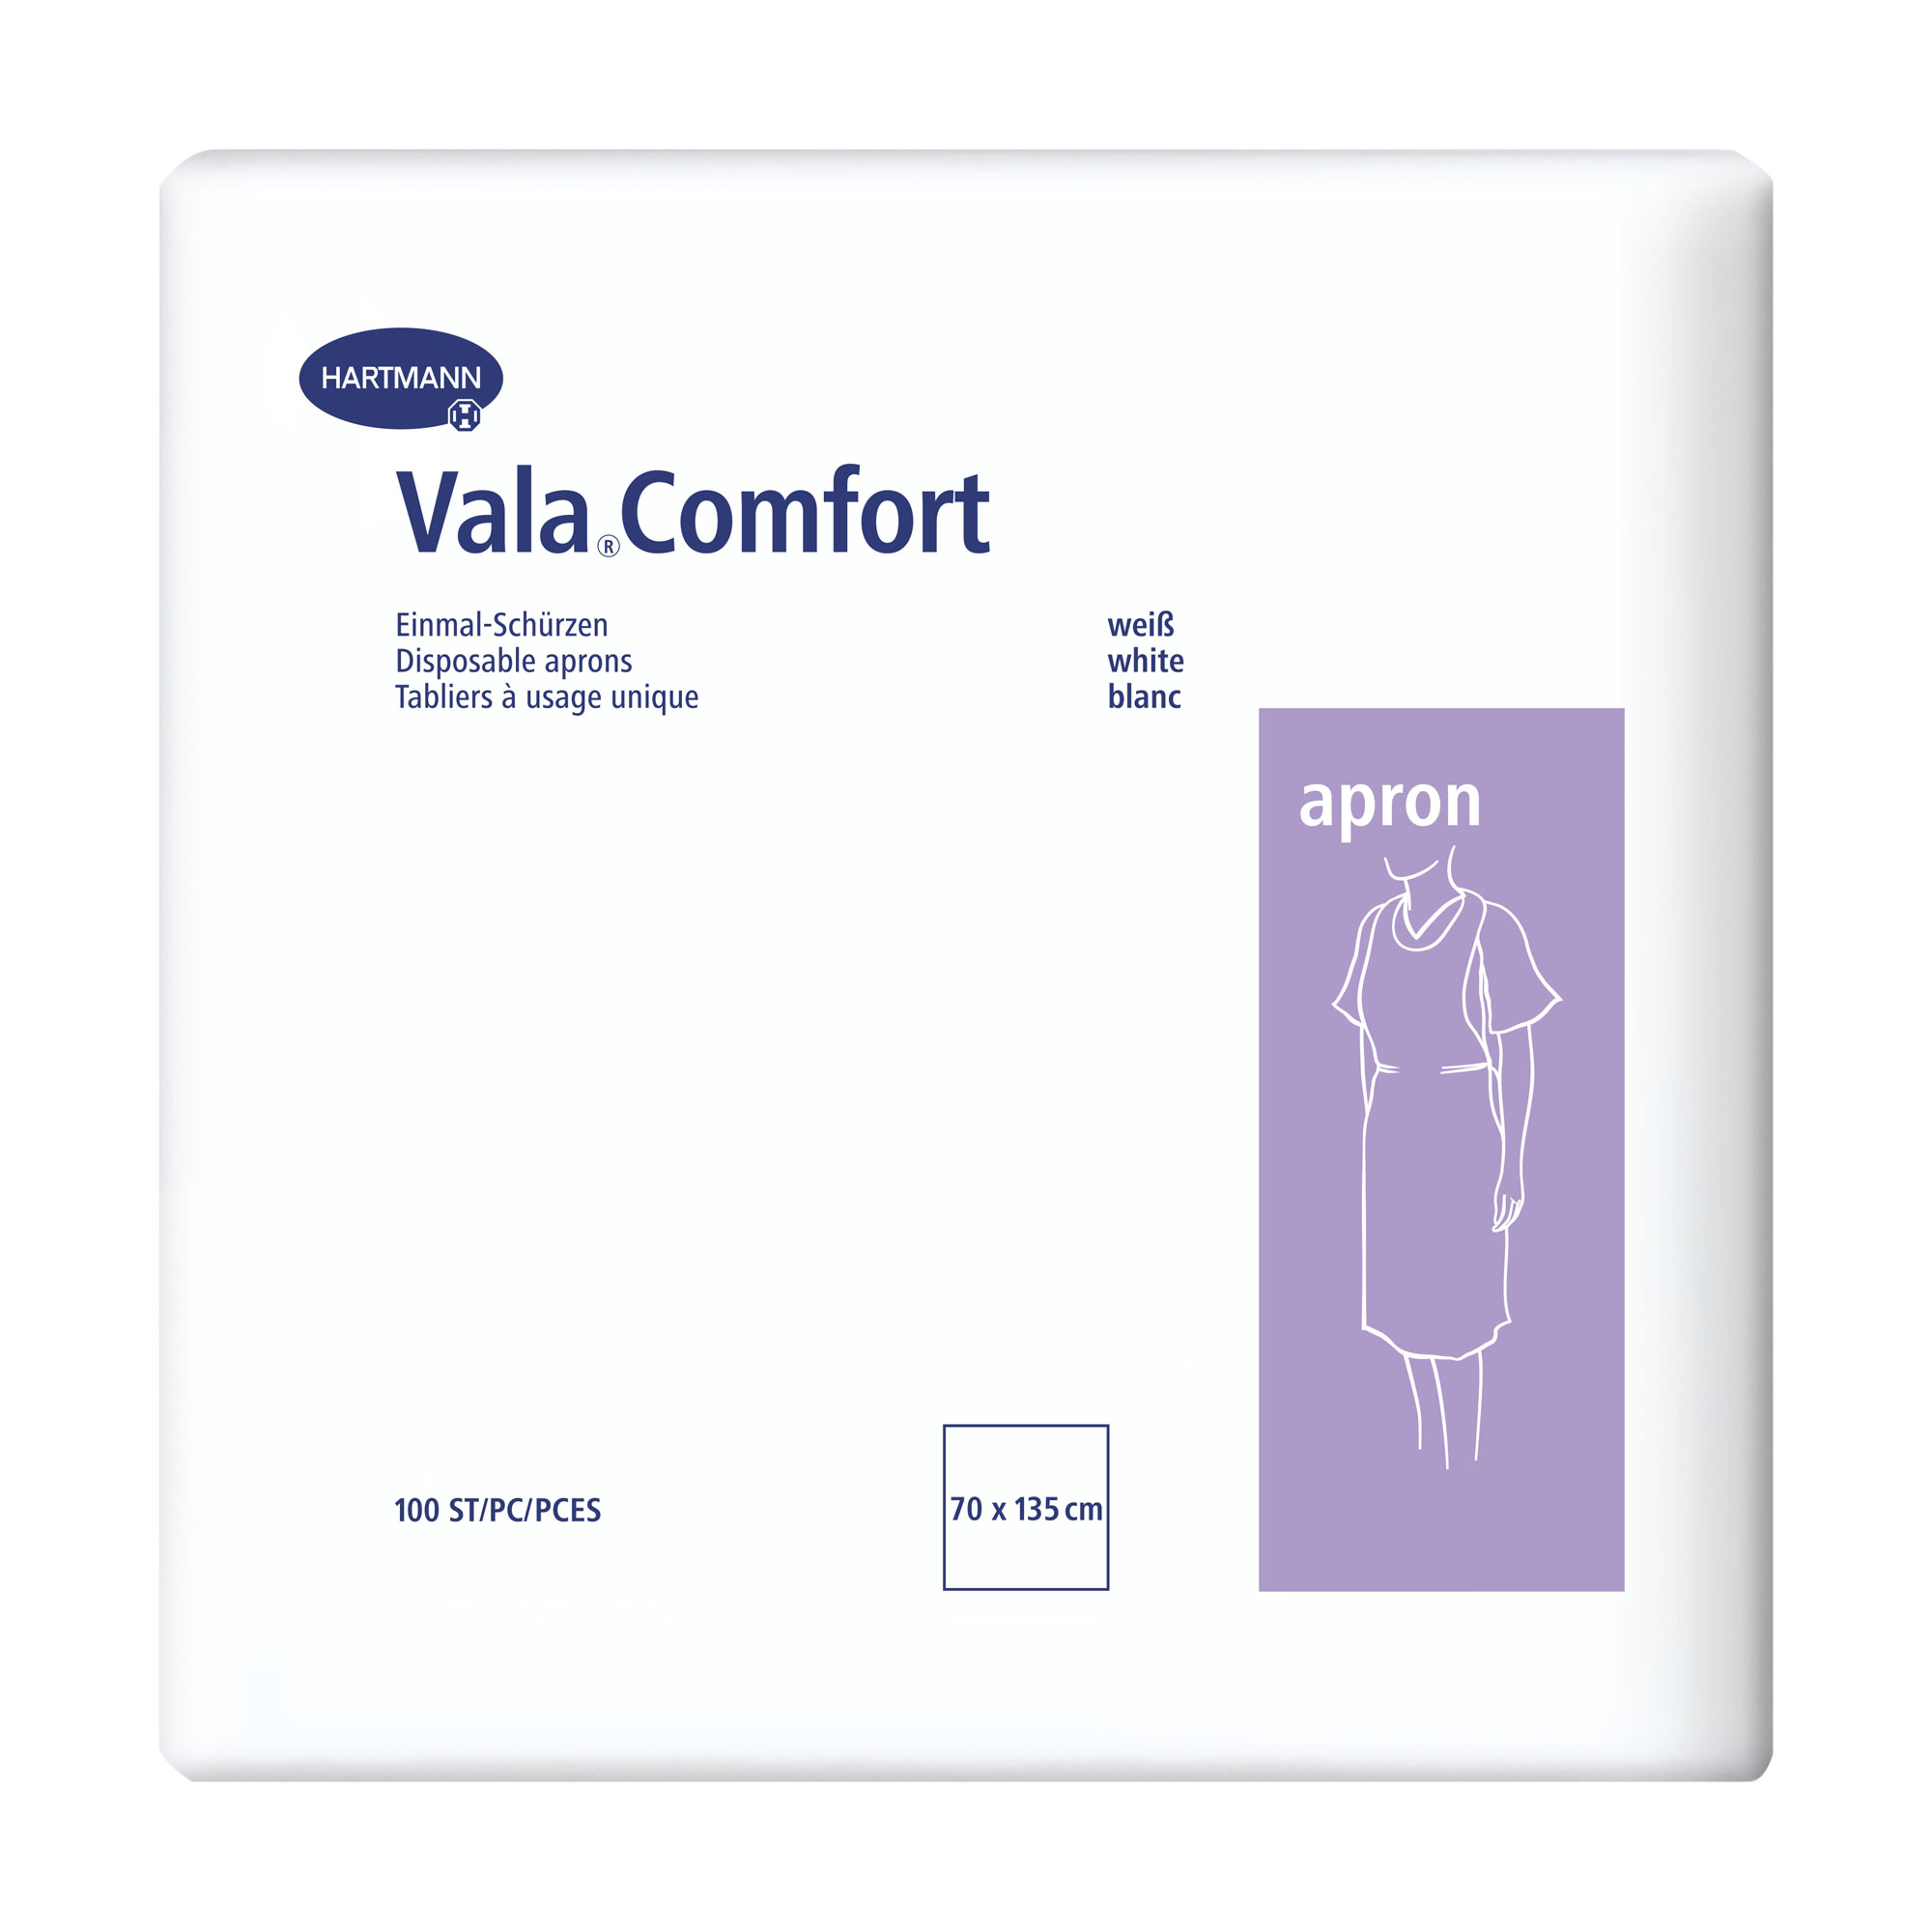 Komfortable Einmal-Schürze für einen professionellen Einsatz in allen Pflegebereichen.